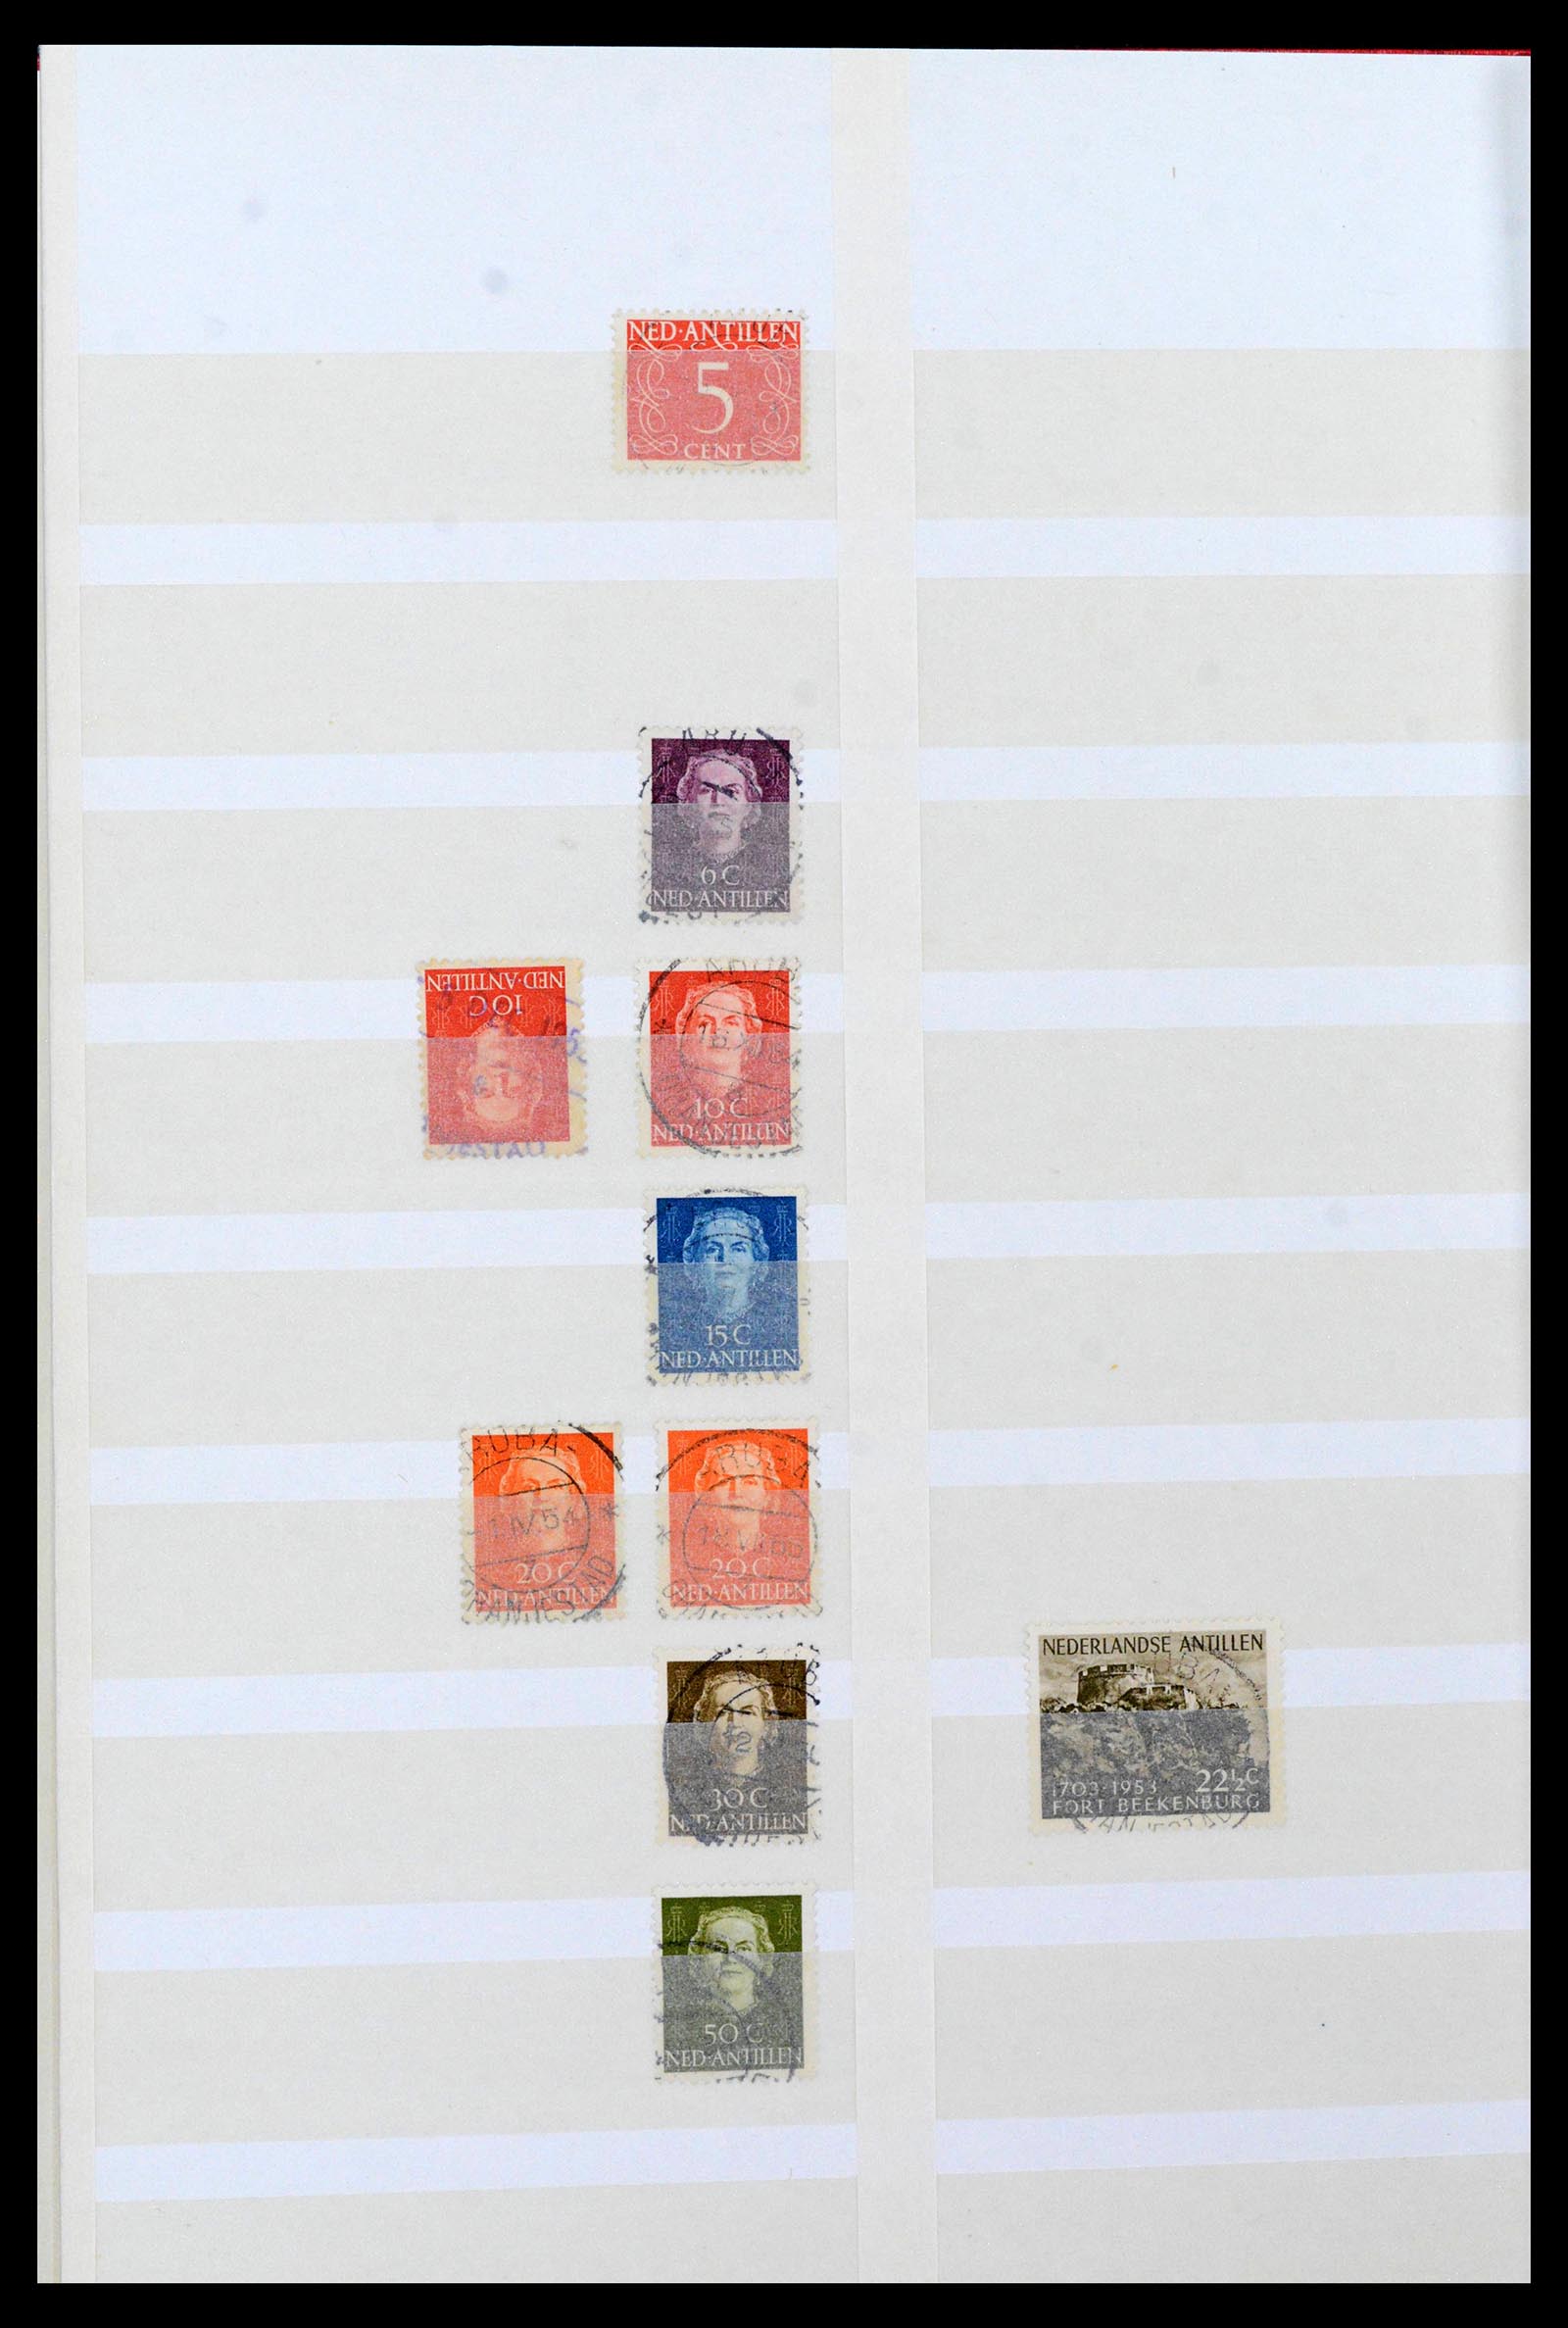 39541 0007 - Postzegelverzameling 39541 Curaçao/Antillen stempels 1873-1970.